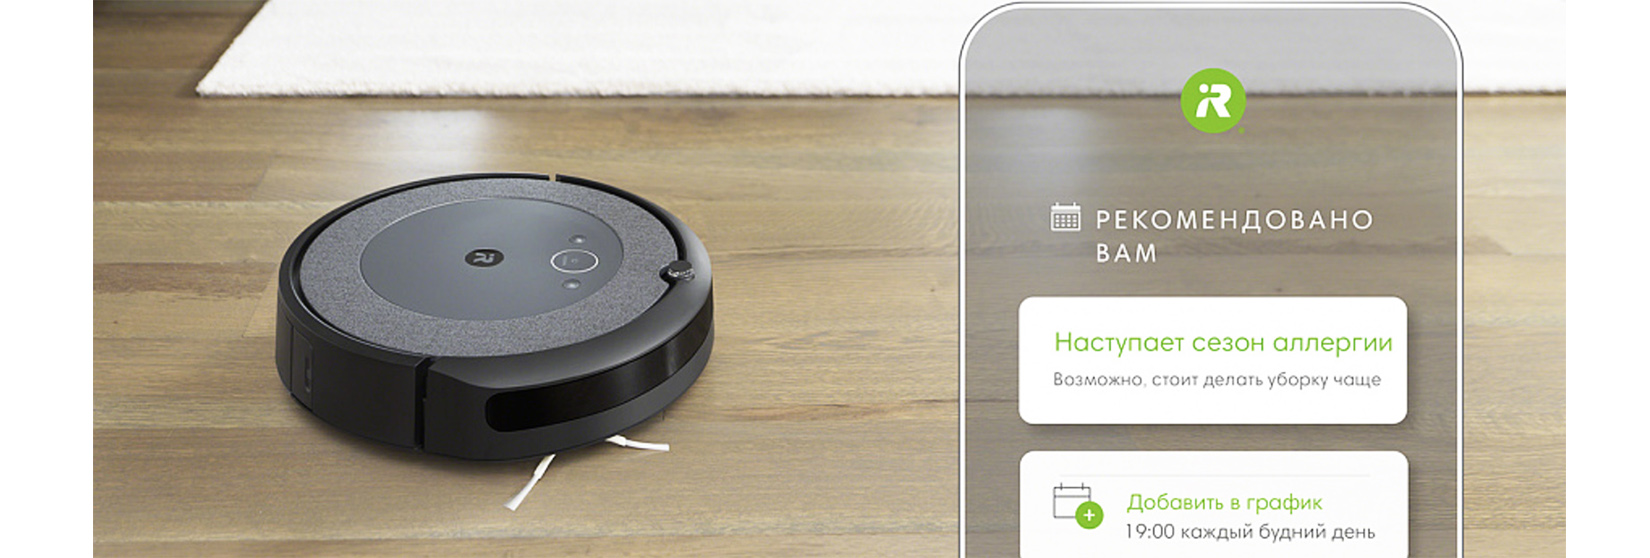 Робот пылесос iRobot Roomba i3 управляется с помощью мобильного телефона